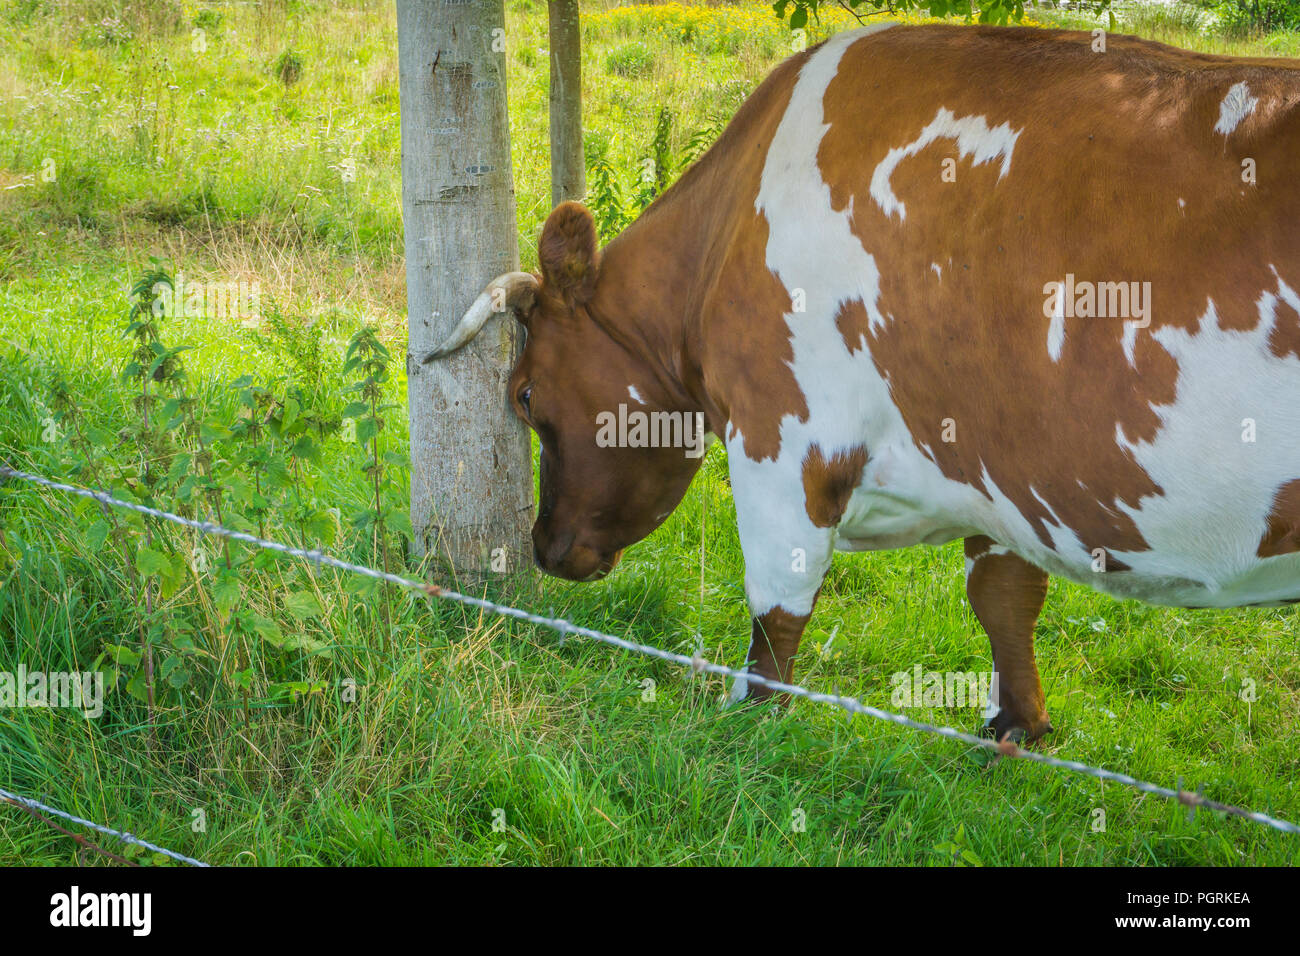 Horned vache brune se cogner la tête contre un tronc d'arbre Banque D'Images